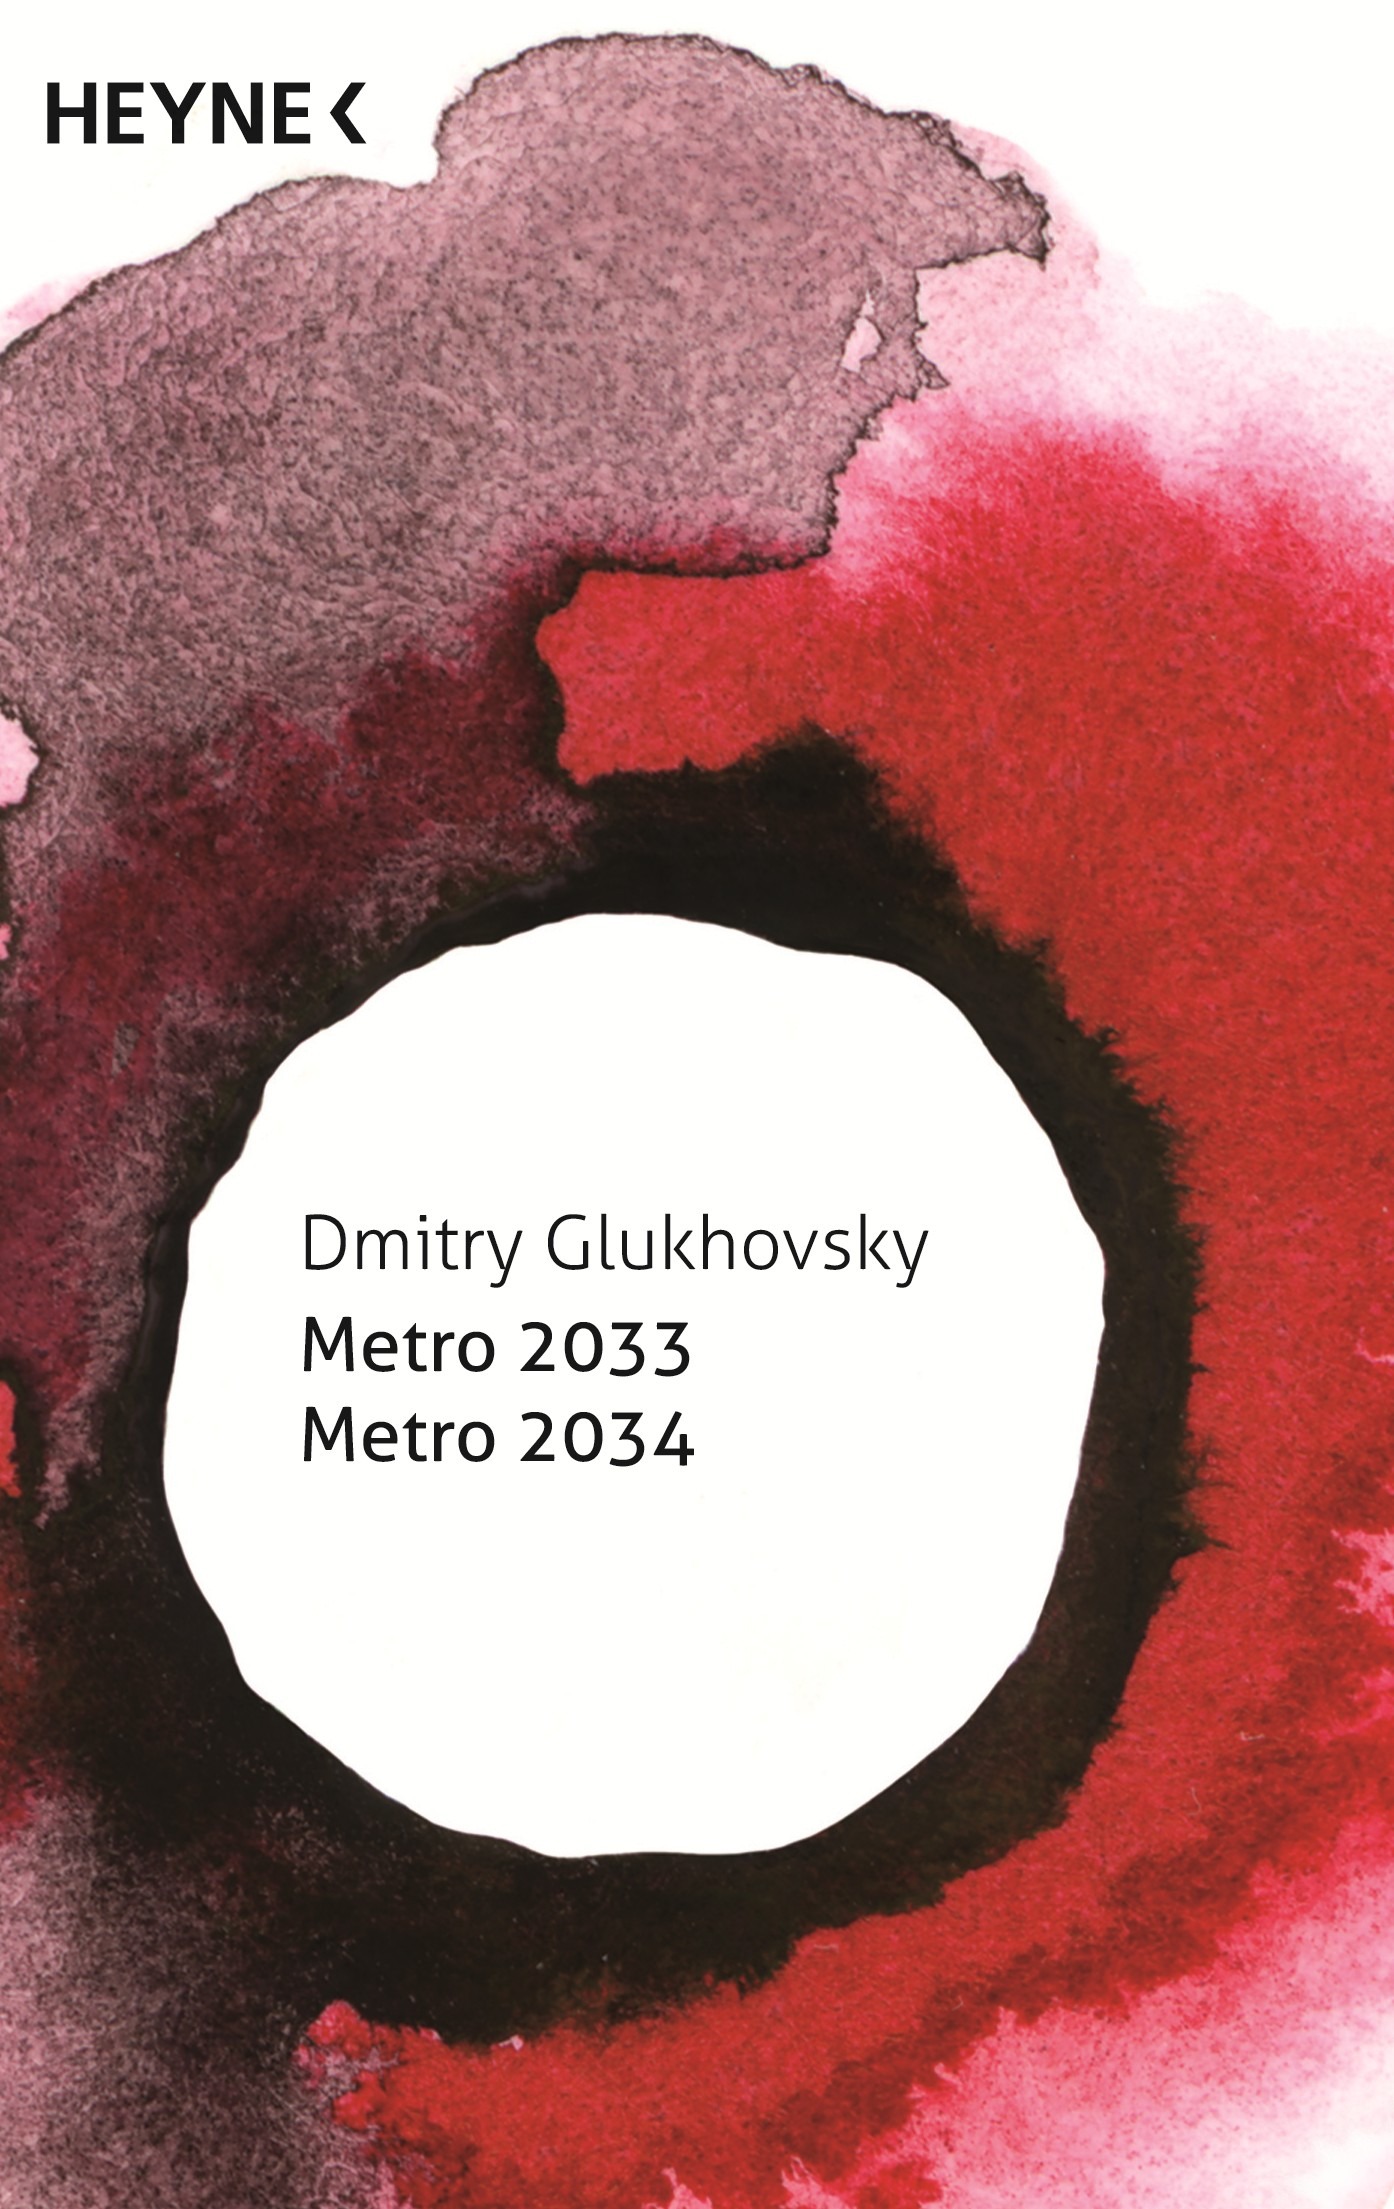 Metro 2033 by dmitry glukhovsky essay